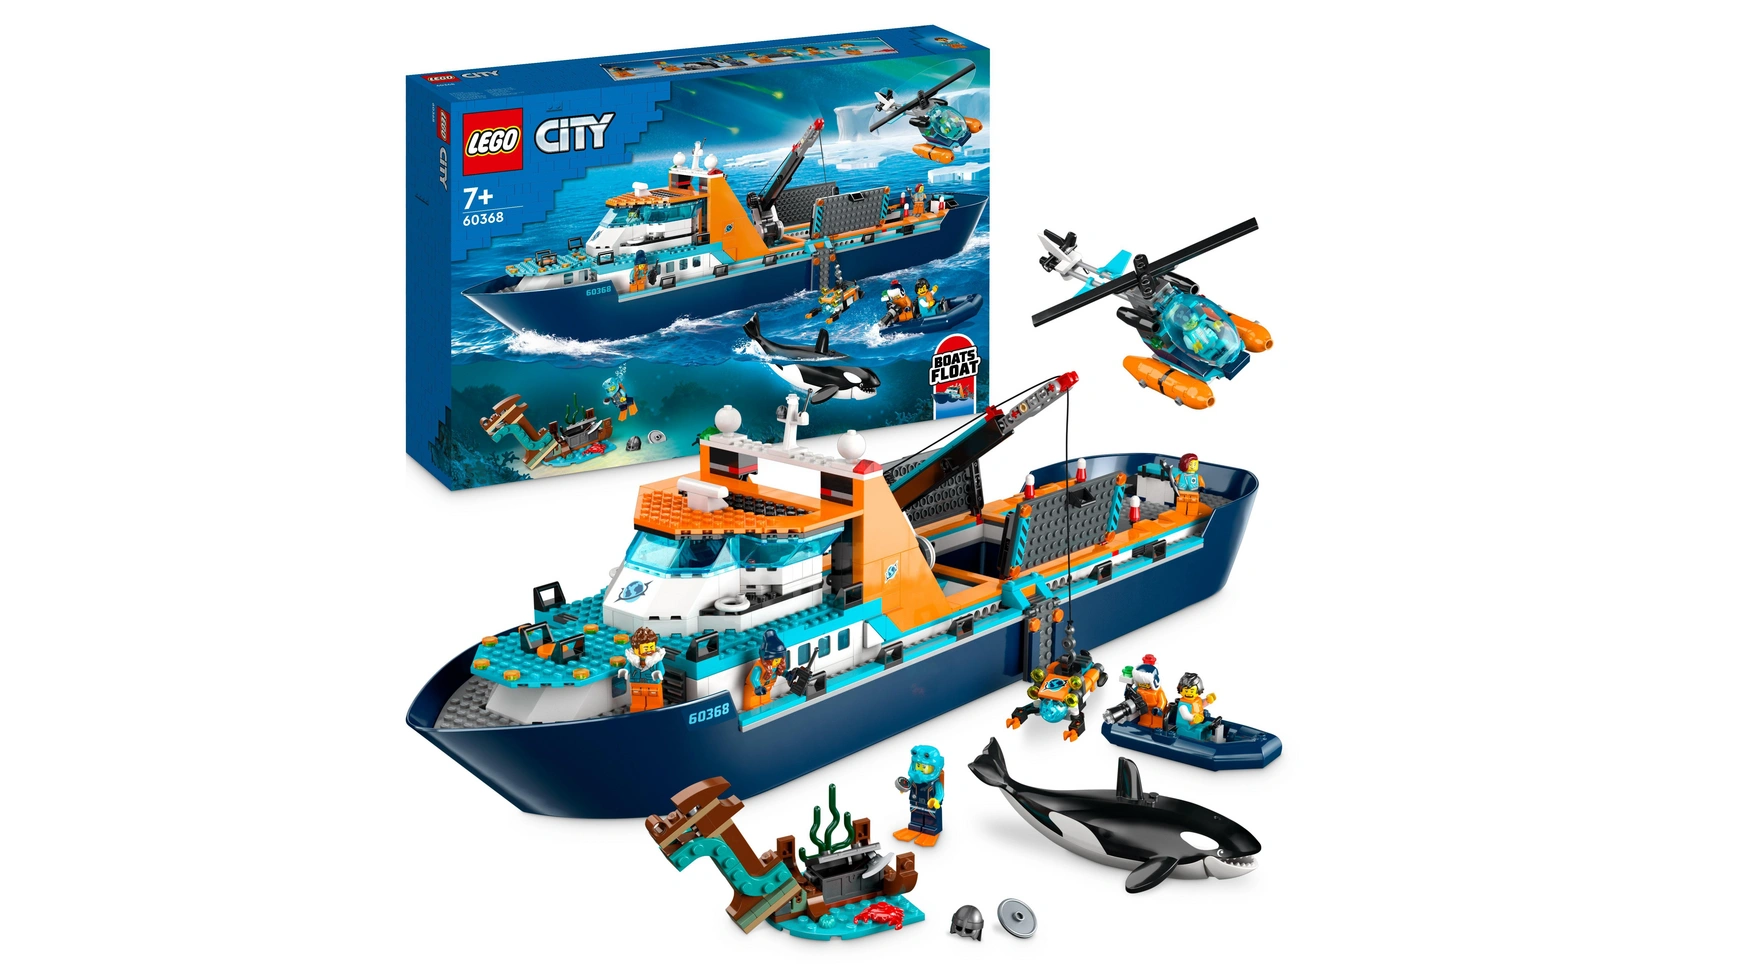 конструктор lego city корабль исследователь арктики 60368 Lego City Арктическое исследовательское судно